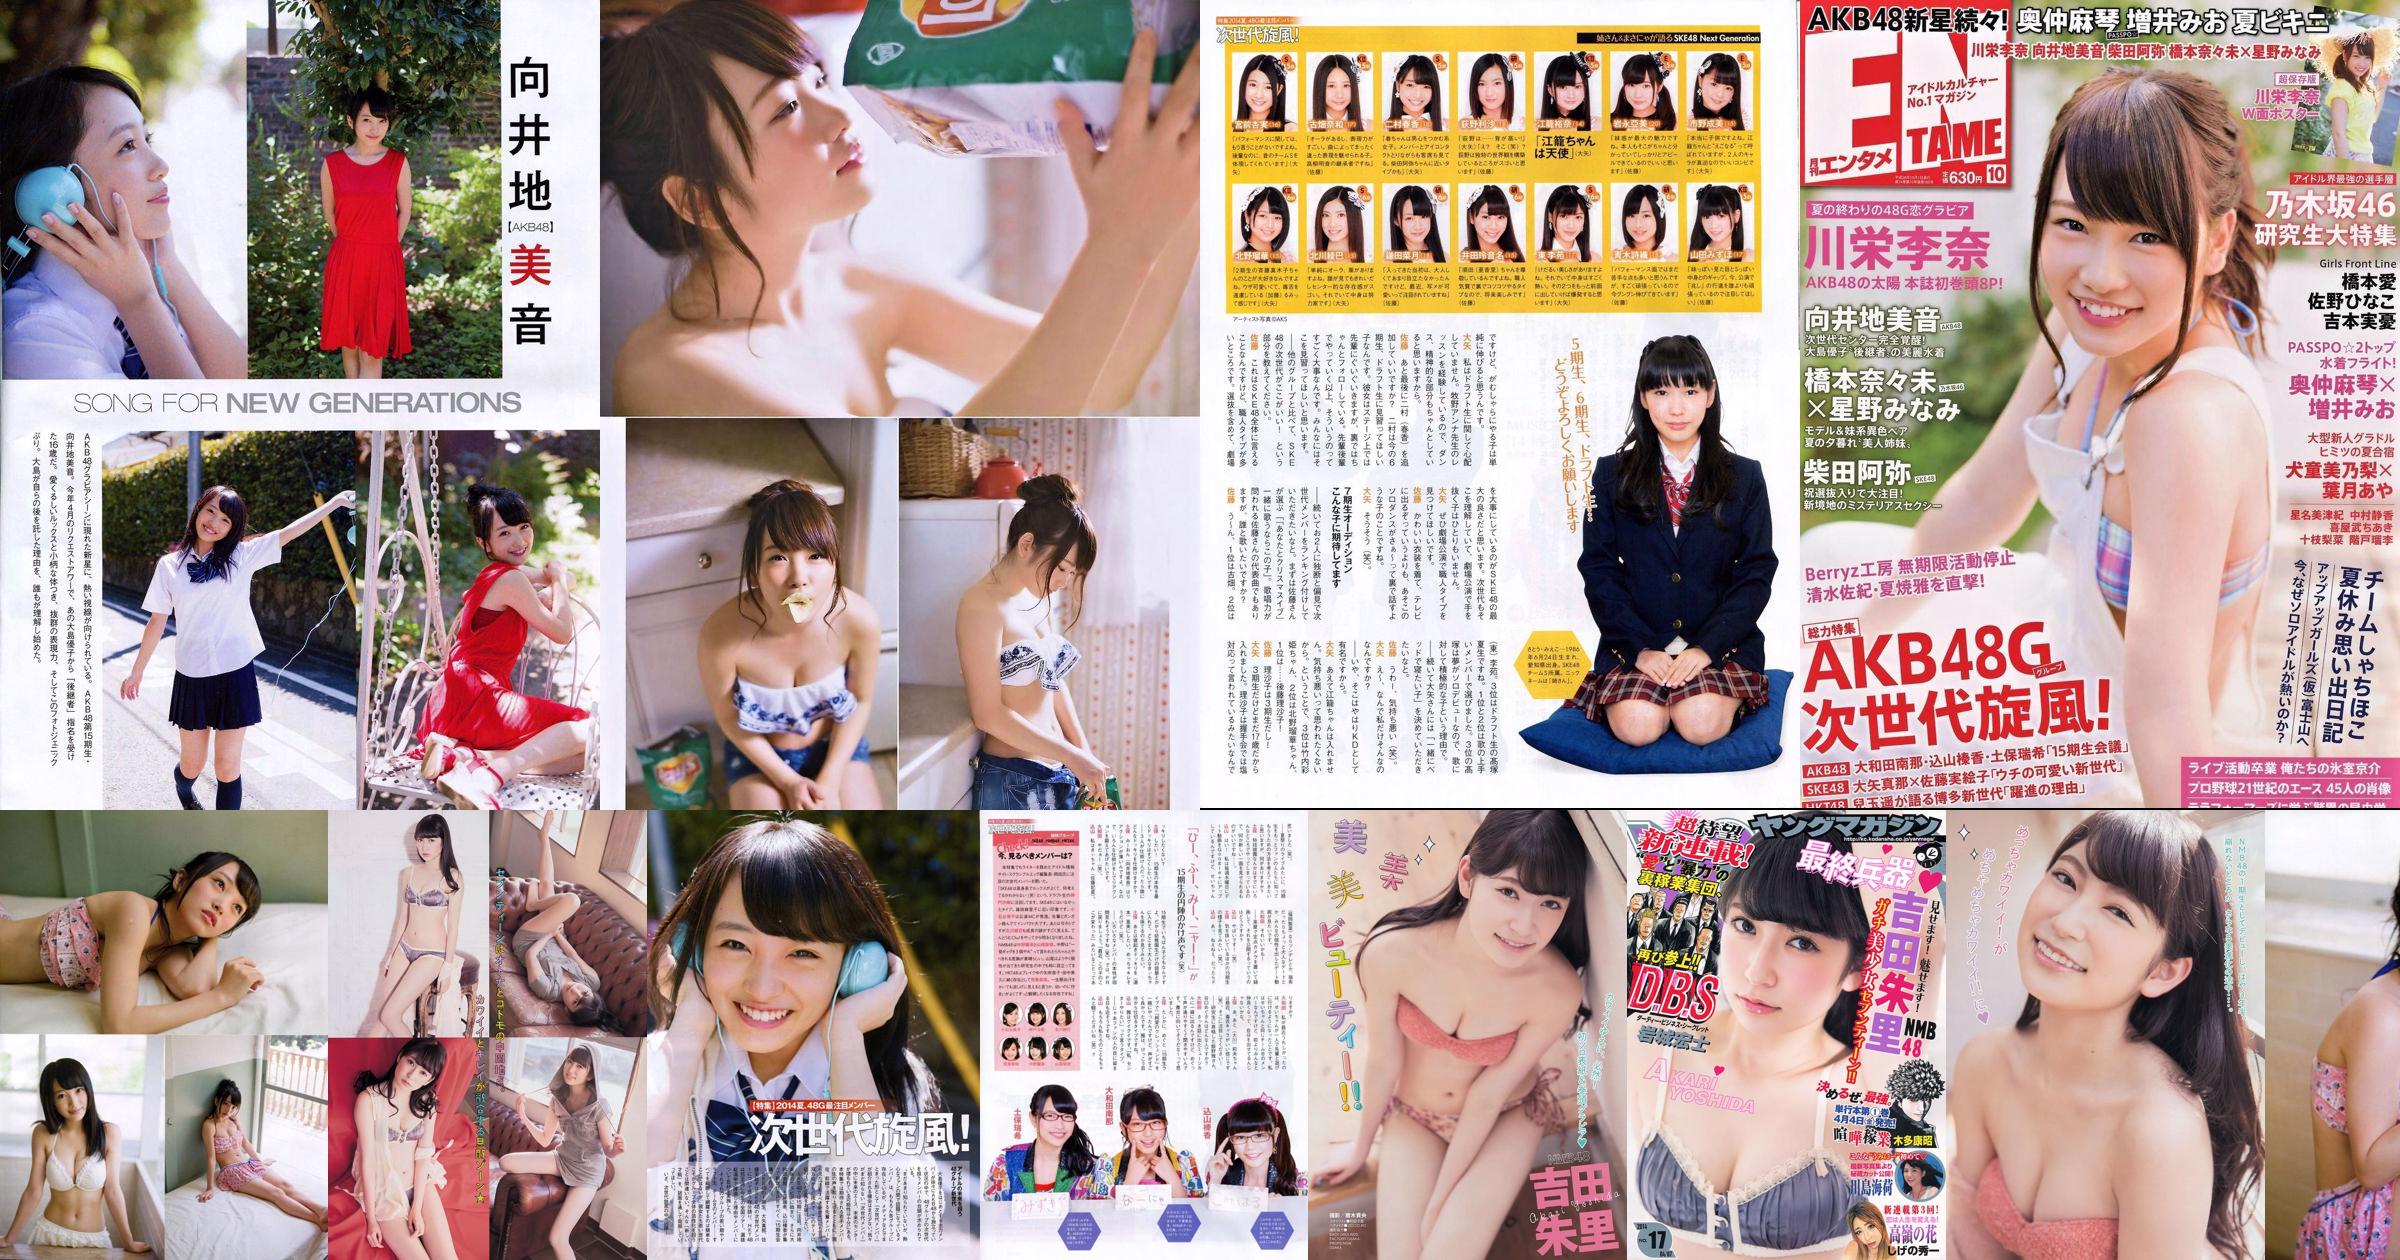 [Revista joven] Akari Yoshida Umika Kawashima 2014 No.17 Fotografía No.c614a2 Página 1